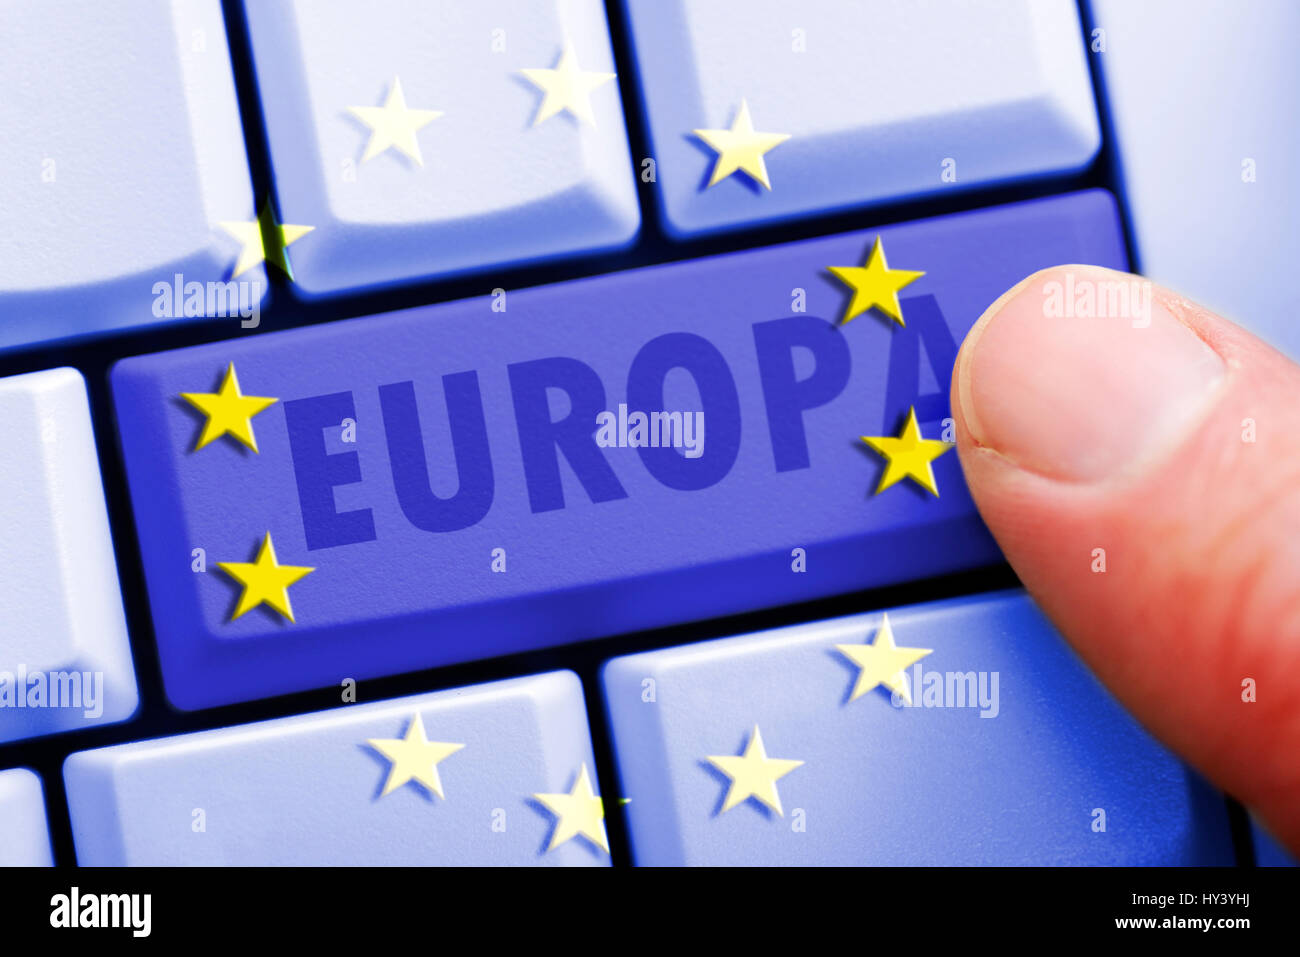 Chiave del computer con l'etichetta l'Europa europea uniforme in materia di protezione dei dati, ordine Computertaste mit der Aufschrift Europa, einheitliche europaeische Datensc Foto Stock